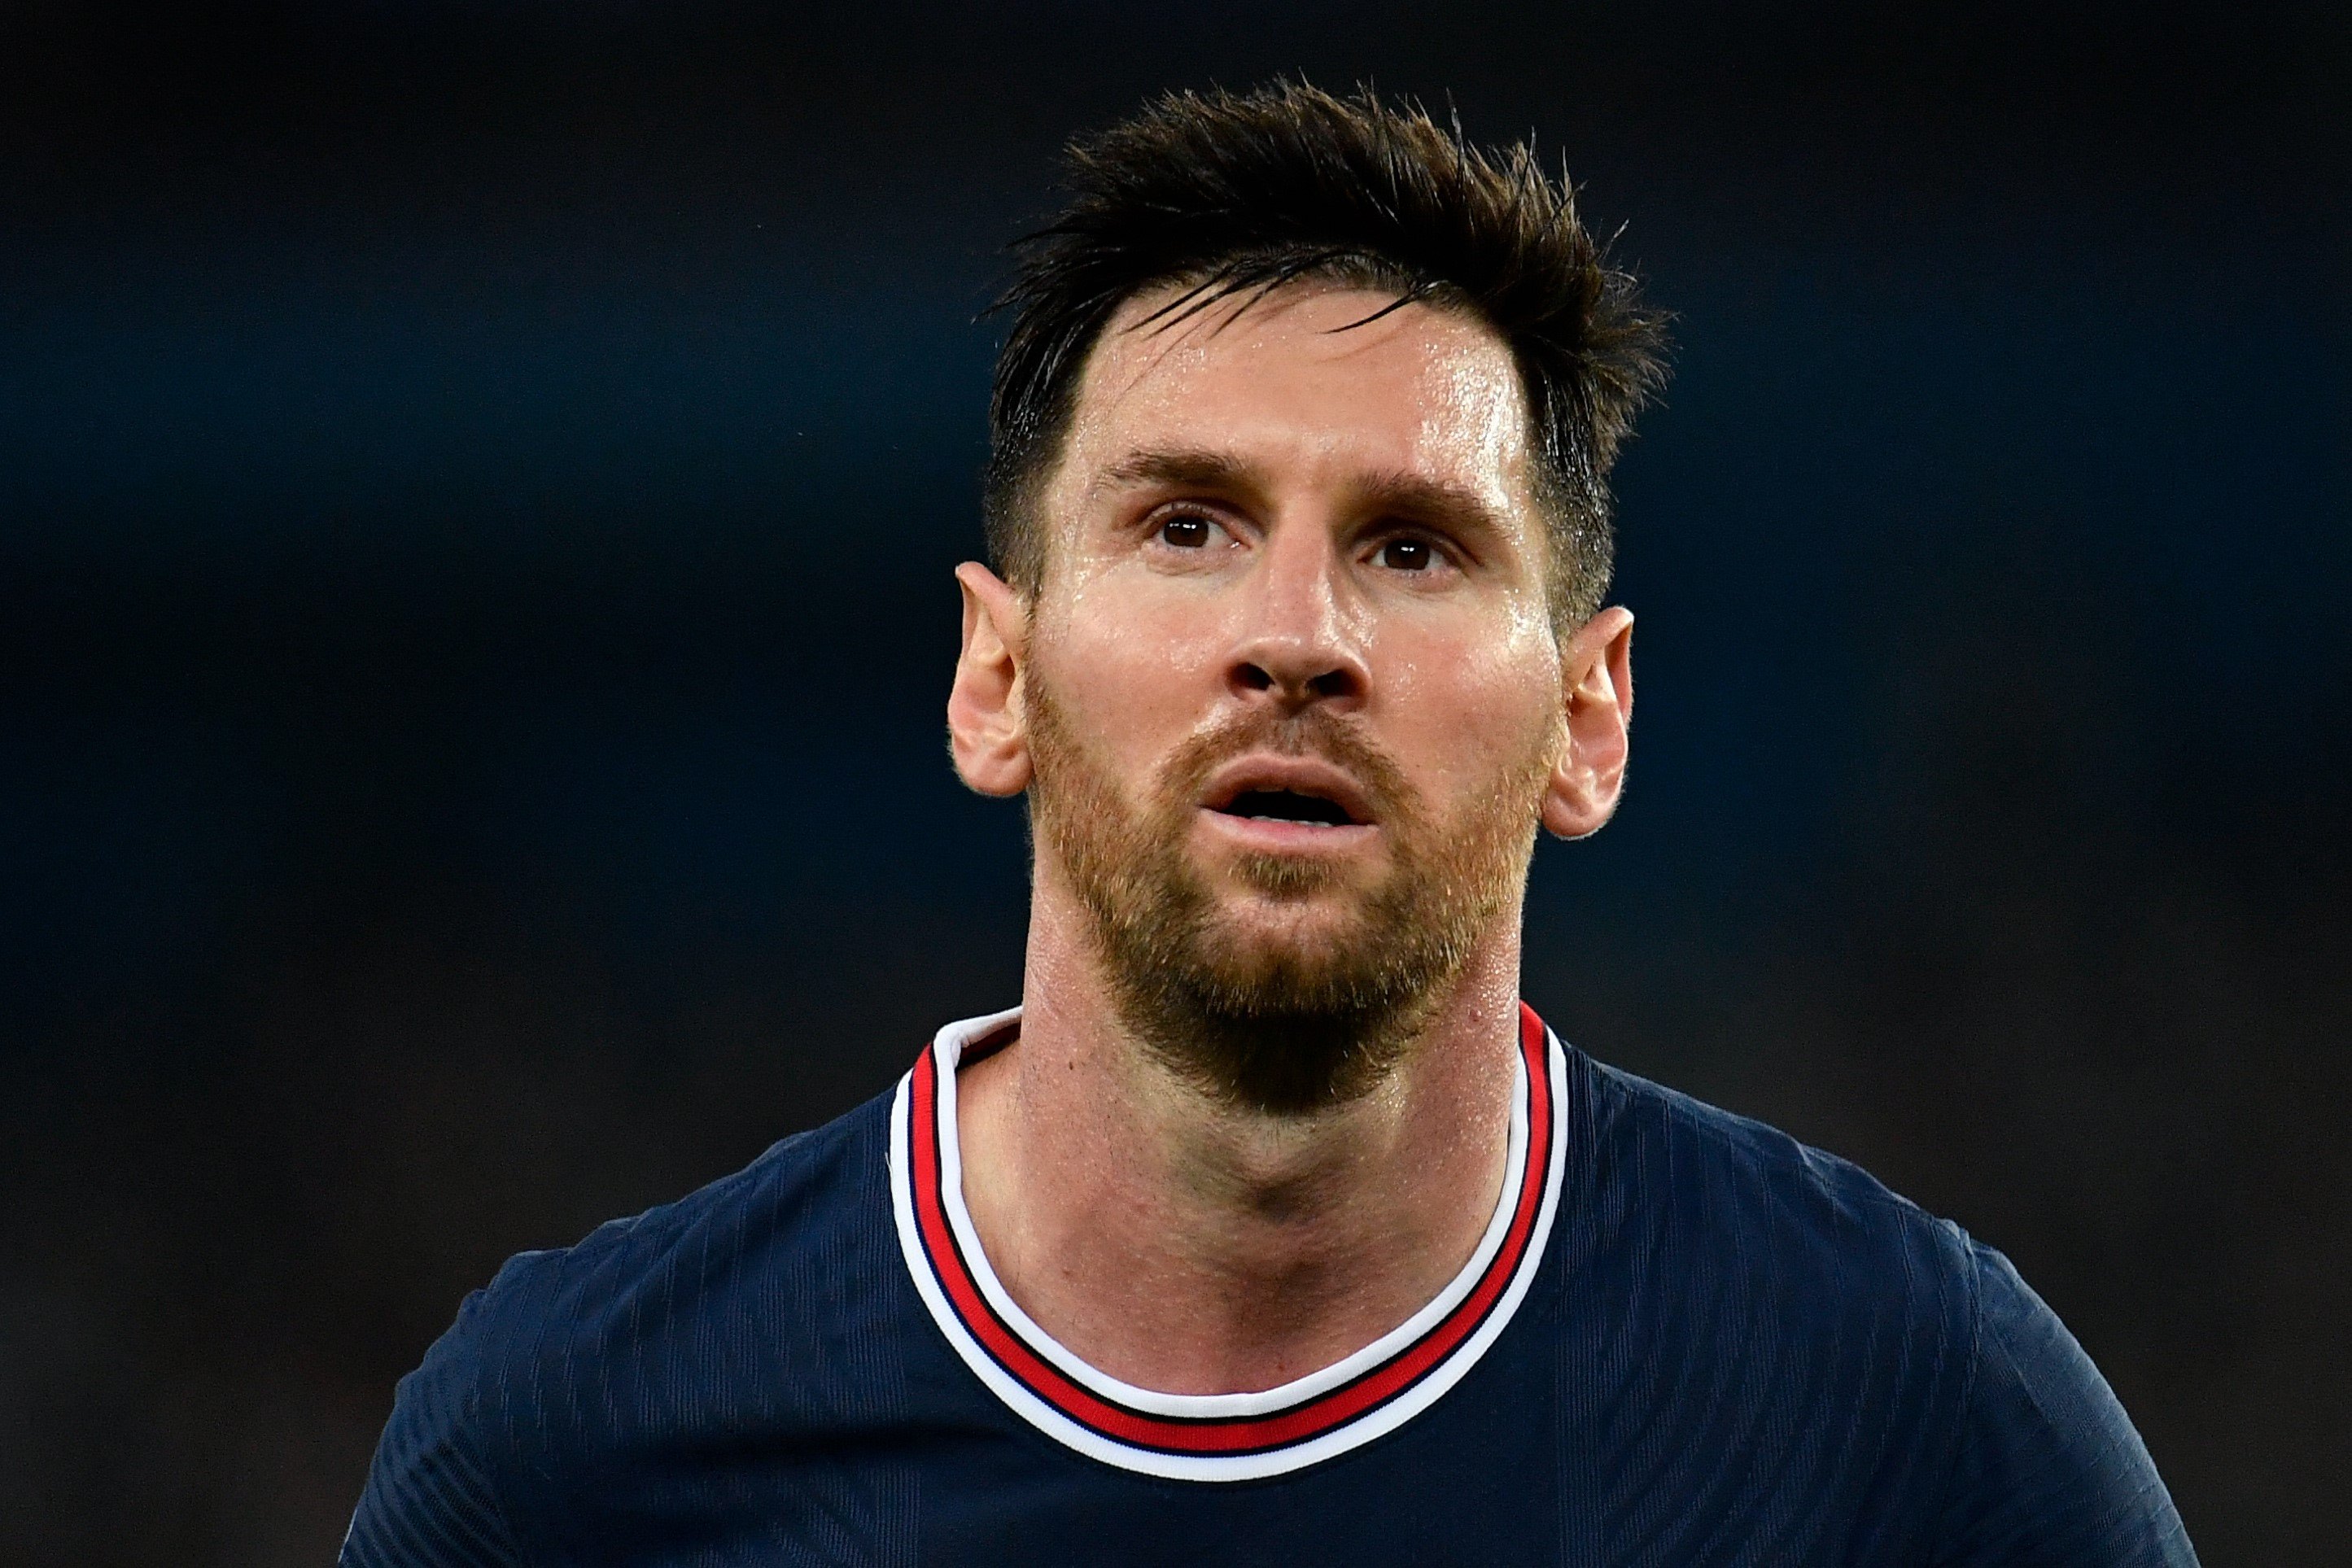 Messi no té pietat del Barça en una entrevista per a France Football que farà molt mal al barcelonisme